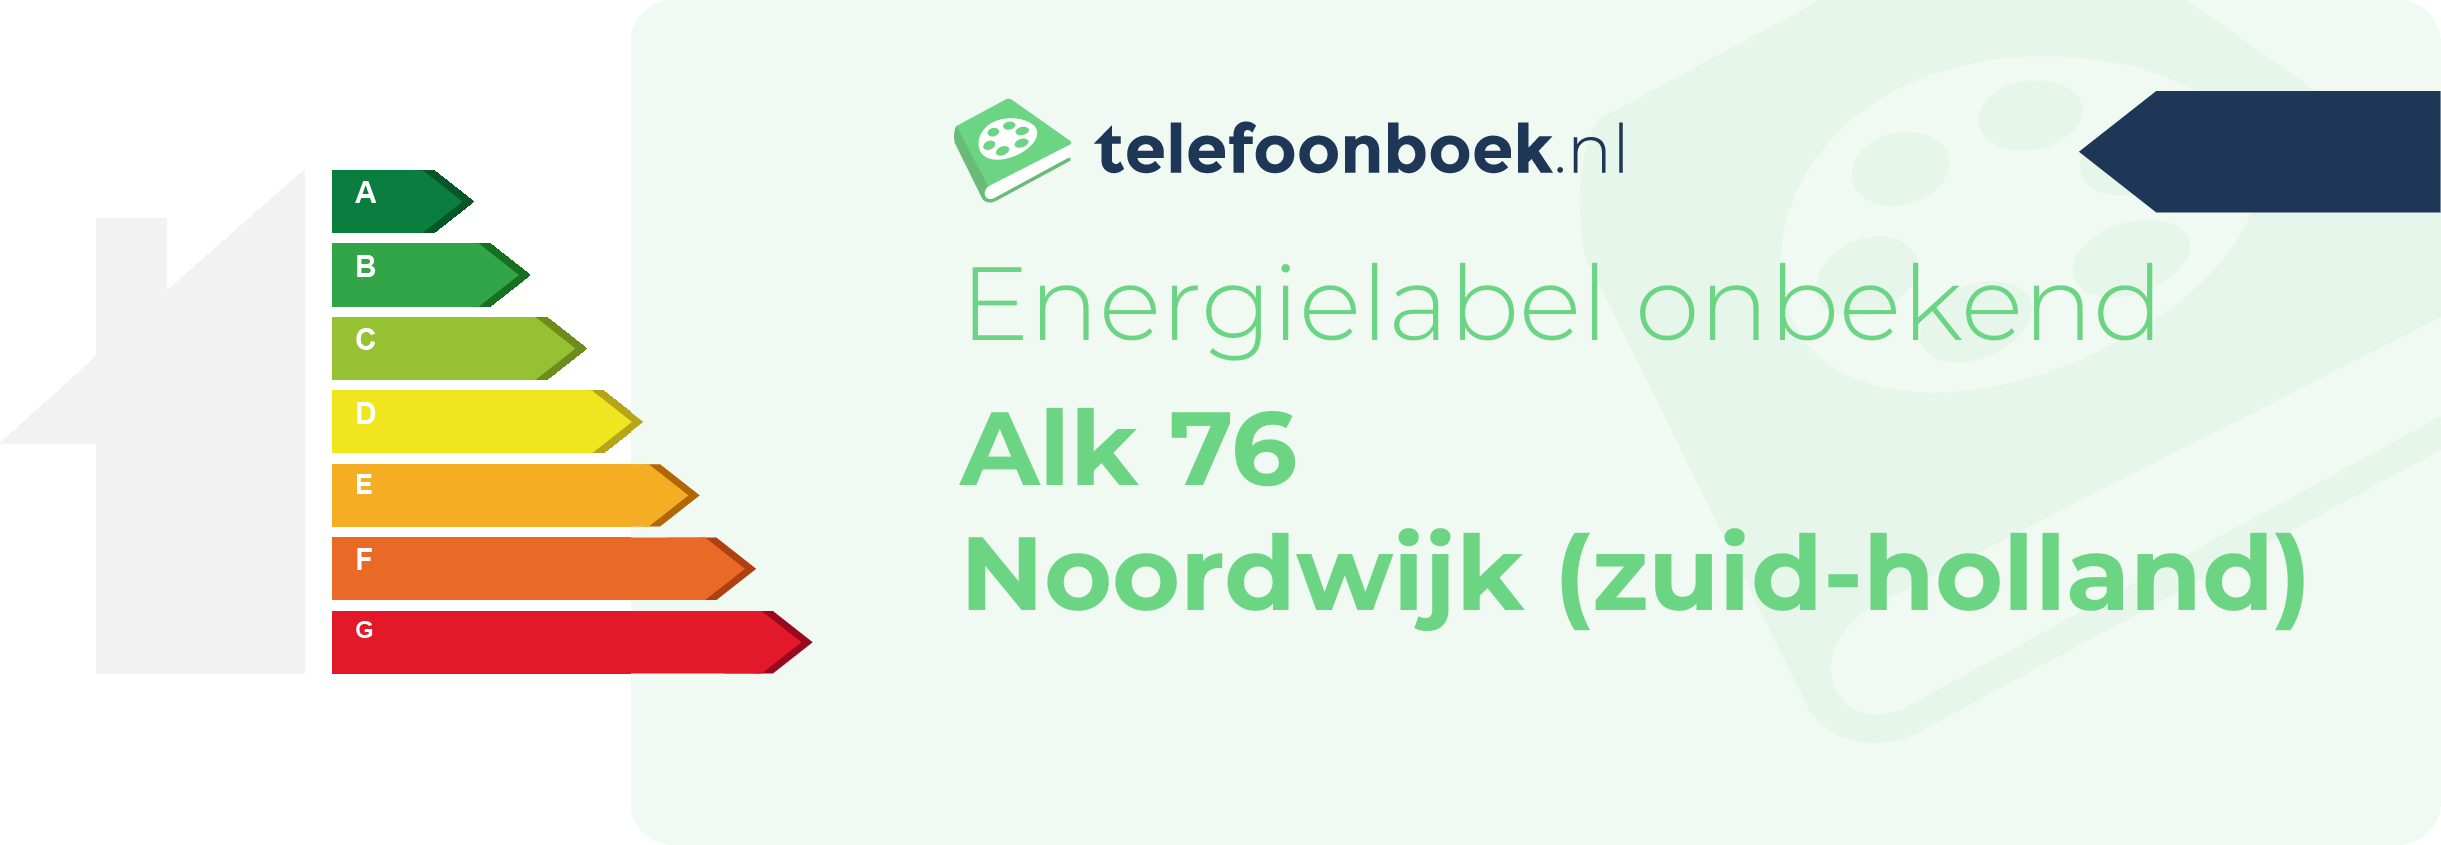 Energielabel Alk 76 Noordwijk (Zuid-Holland)